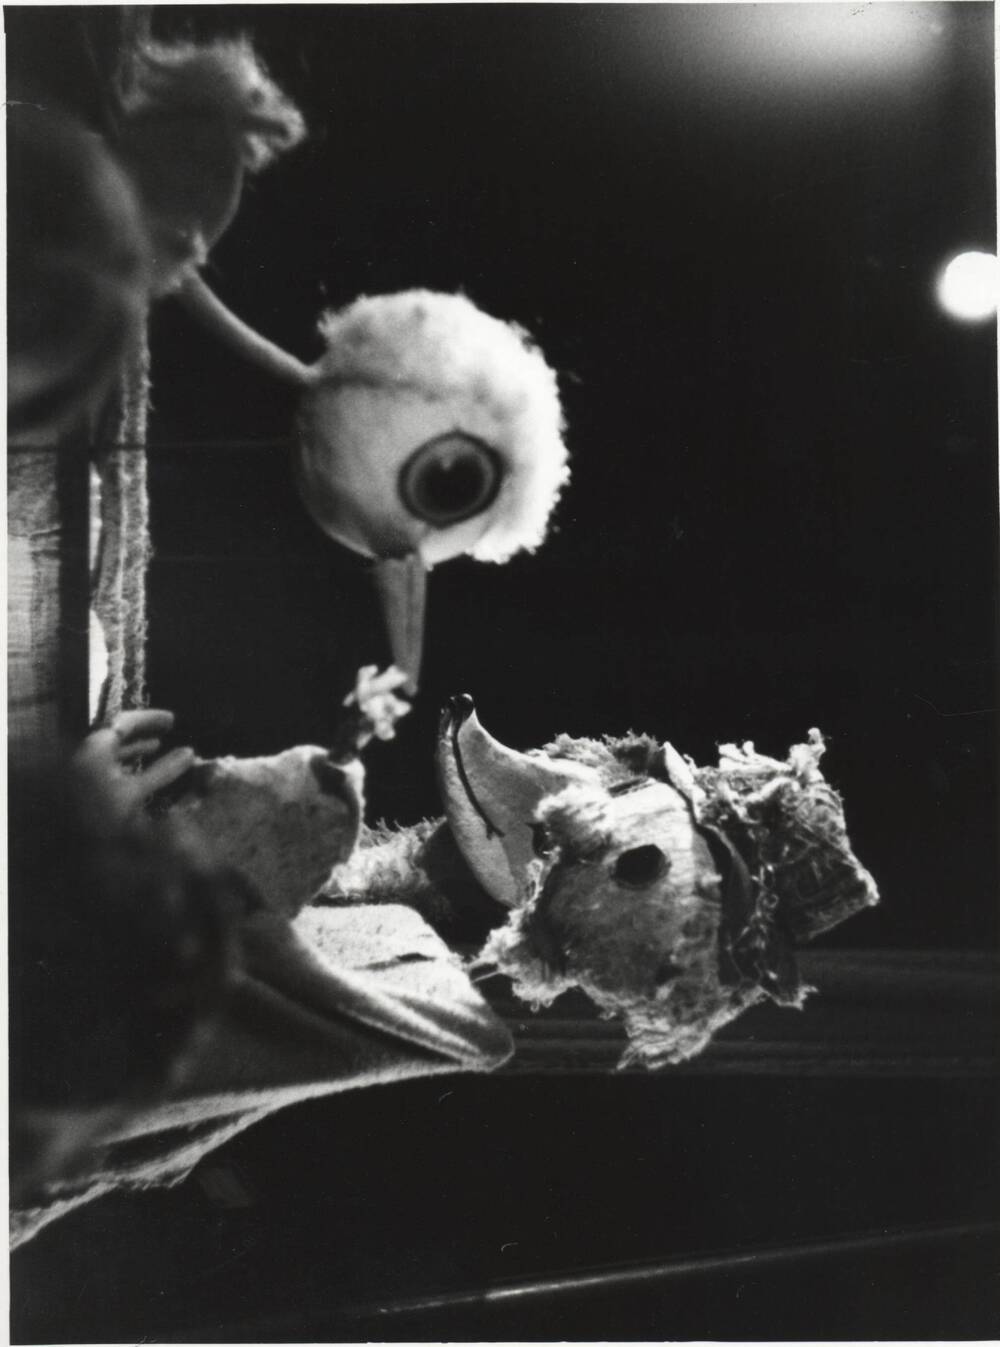 Фото сюжетное. Сцена из спектакля «Аистенок и  пугало» Г. Крчулова, Л. Лопейска. Кукла – аистенок, кукла-лиса, переодетая в пугало. Омский кукольный театр.